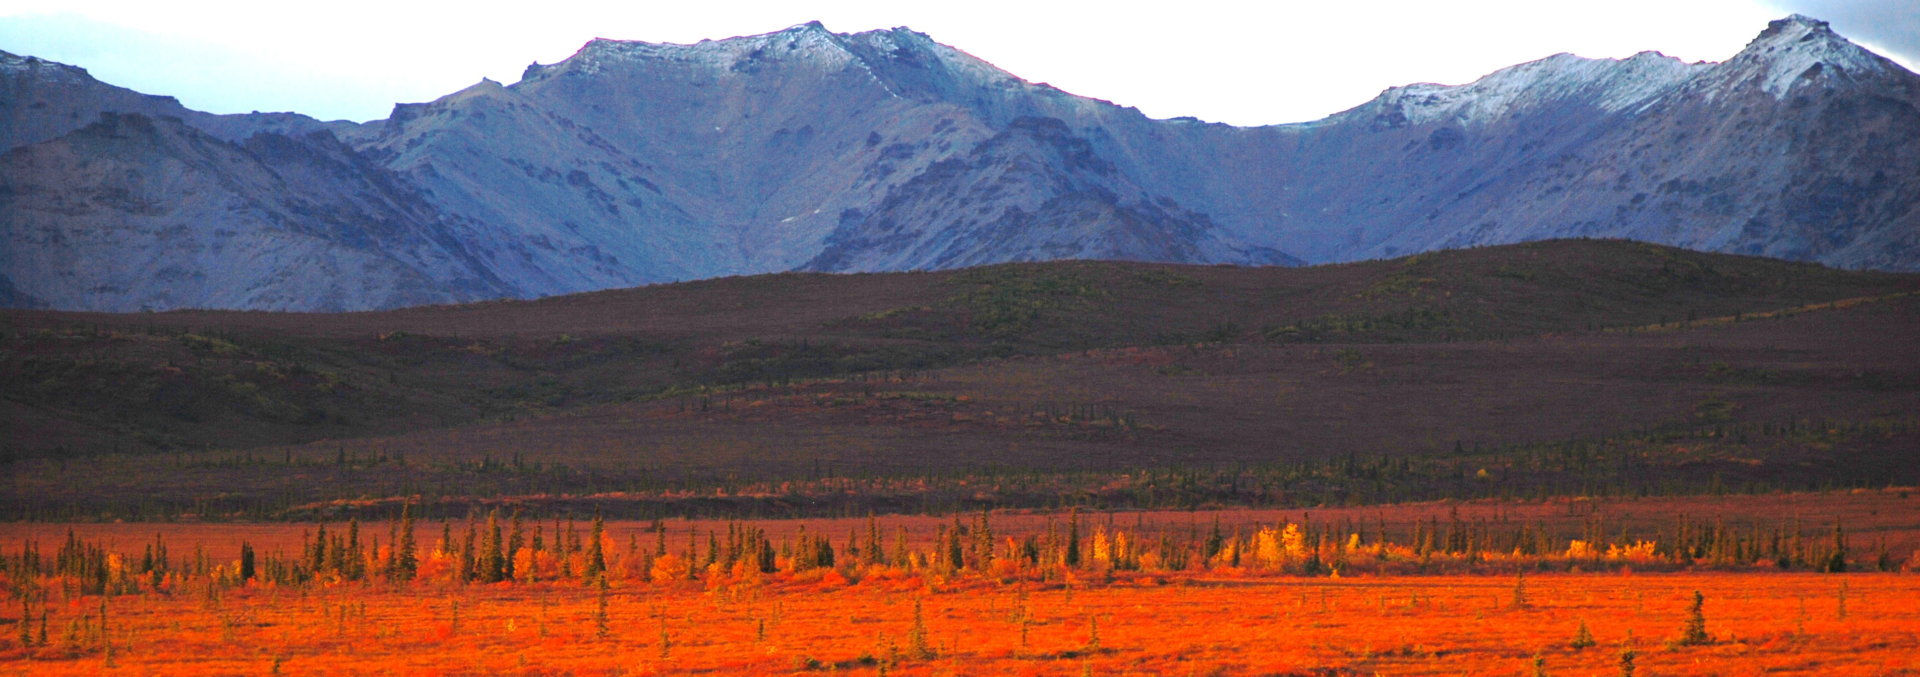 alaska land for sale earthsong lodge